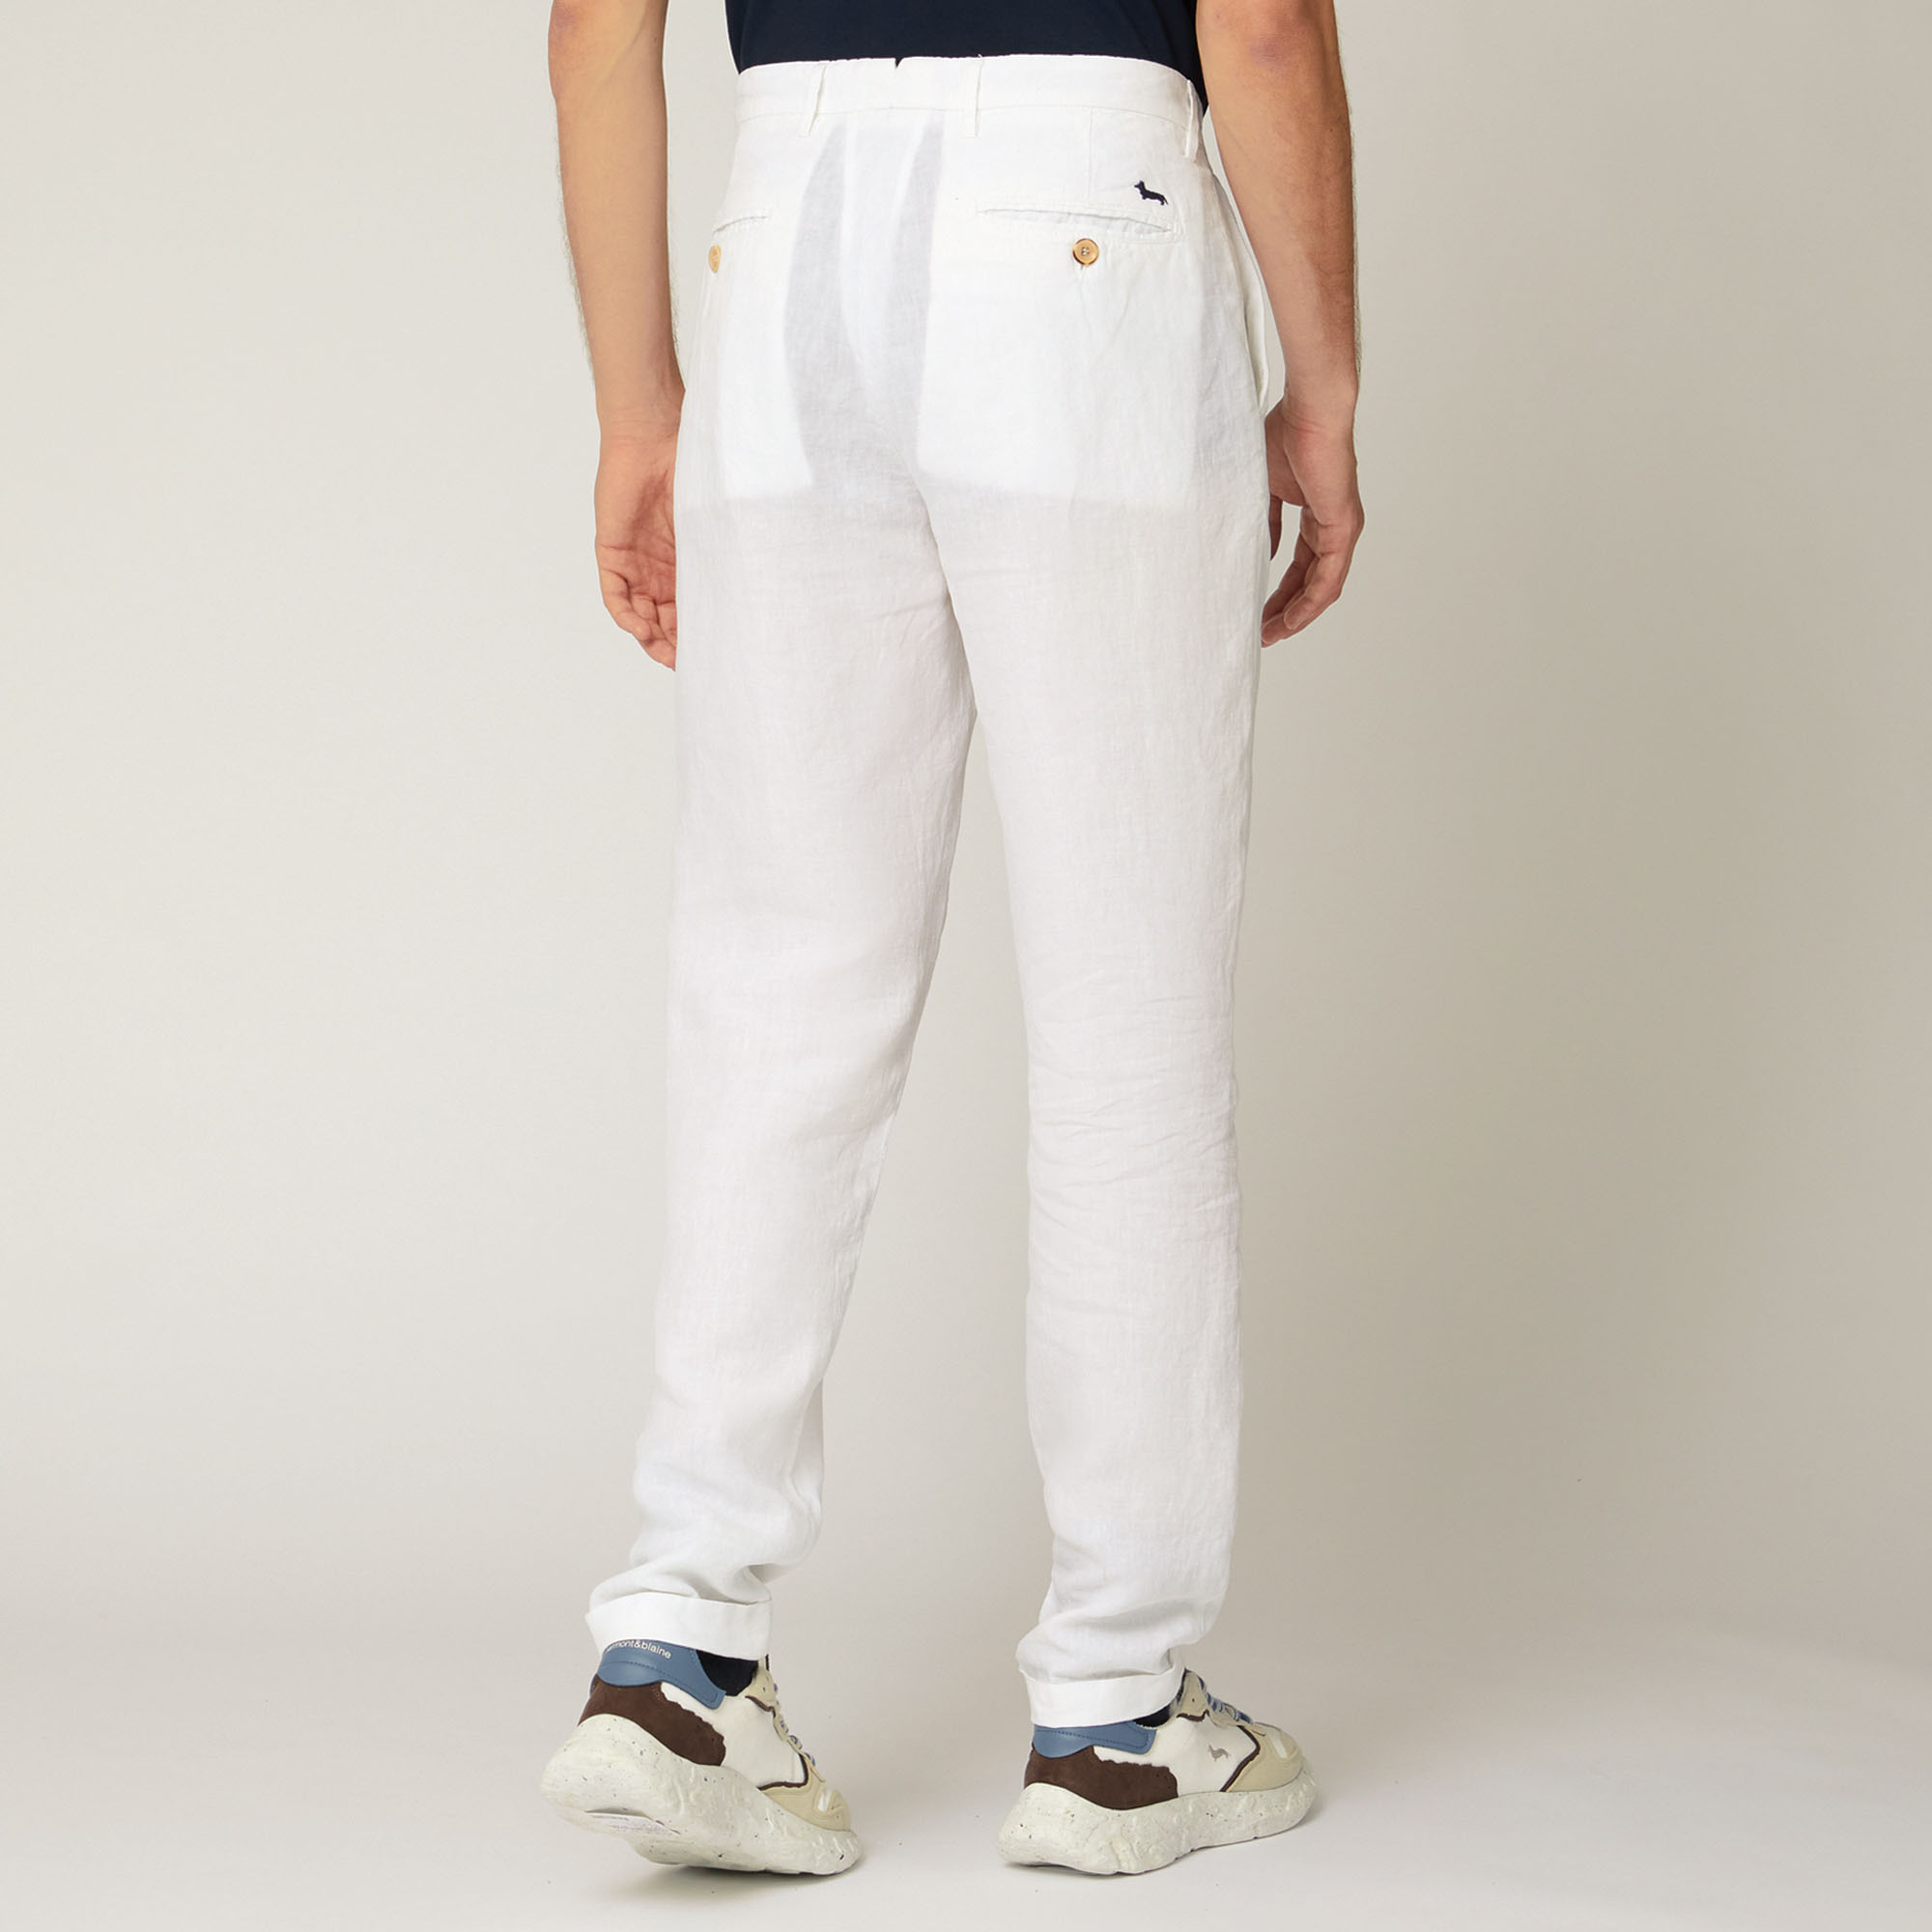 Pantaloni In Lino, Bianco, large image number 1